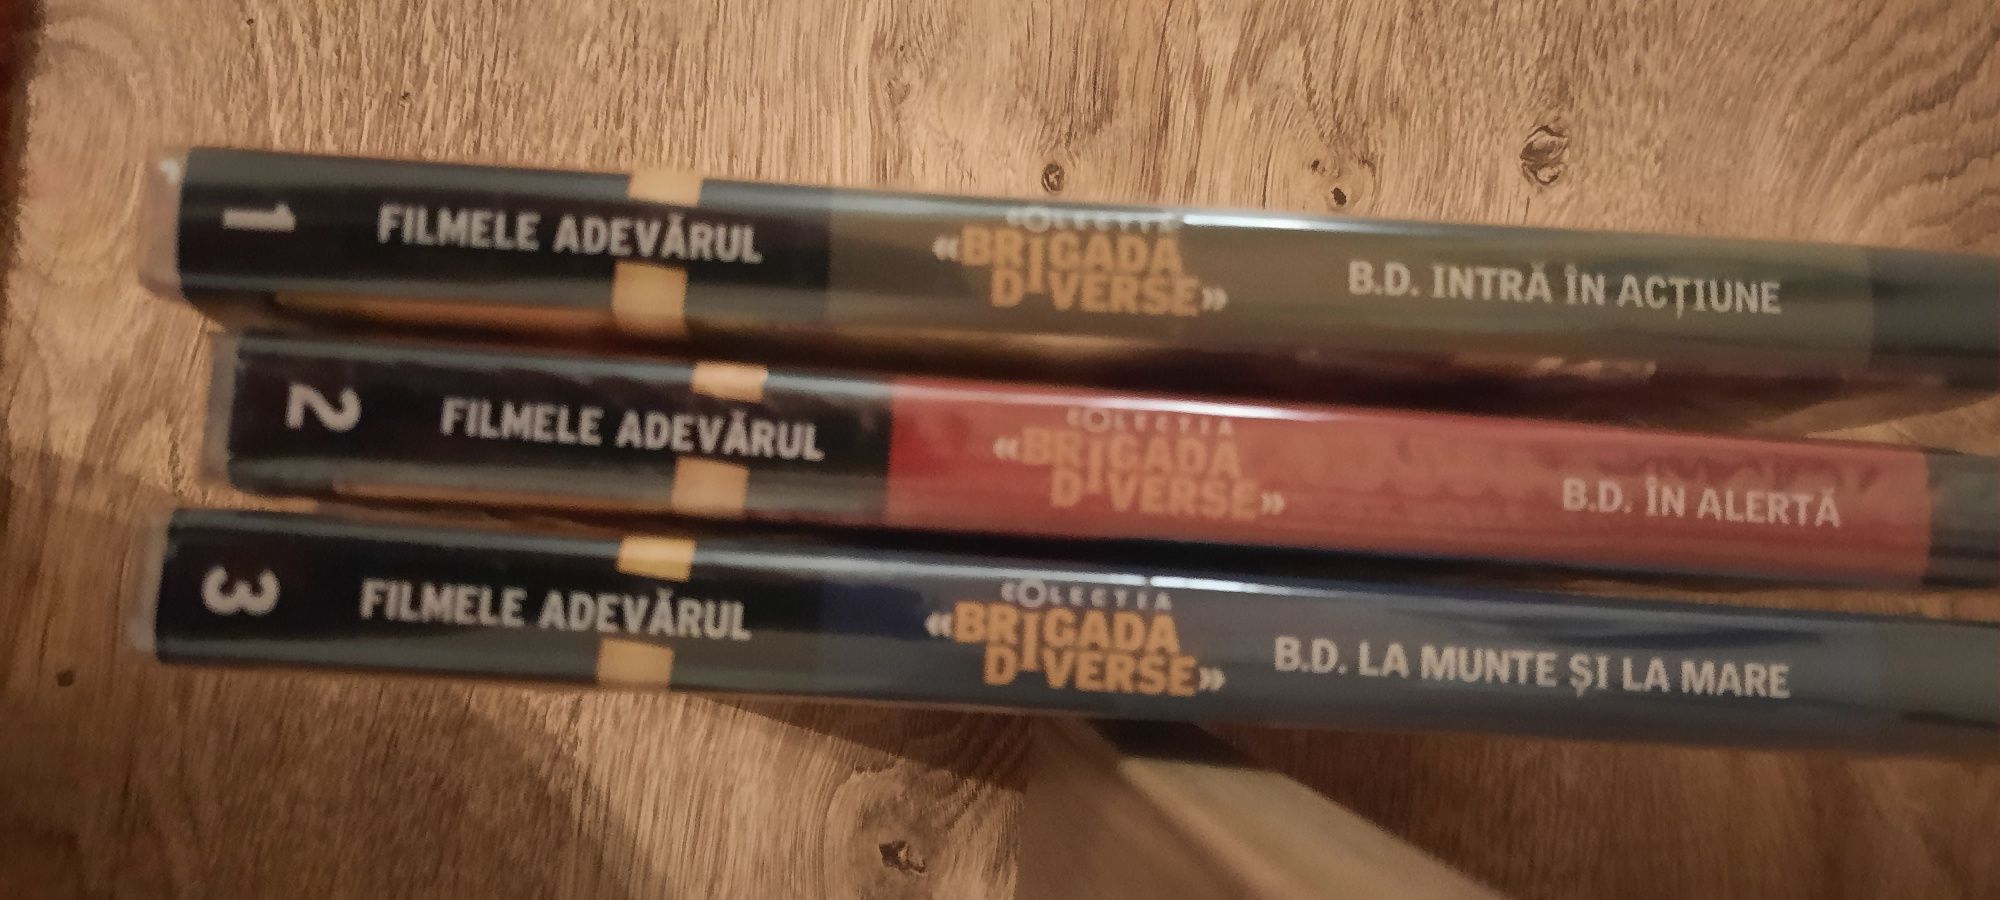 Vand colectia de dvd-uri BD de la Adevarul